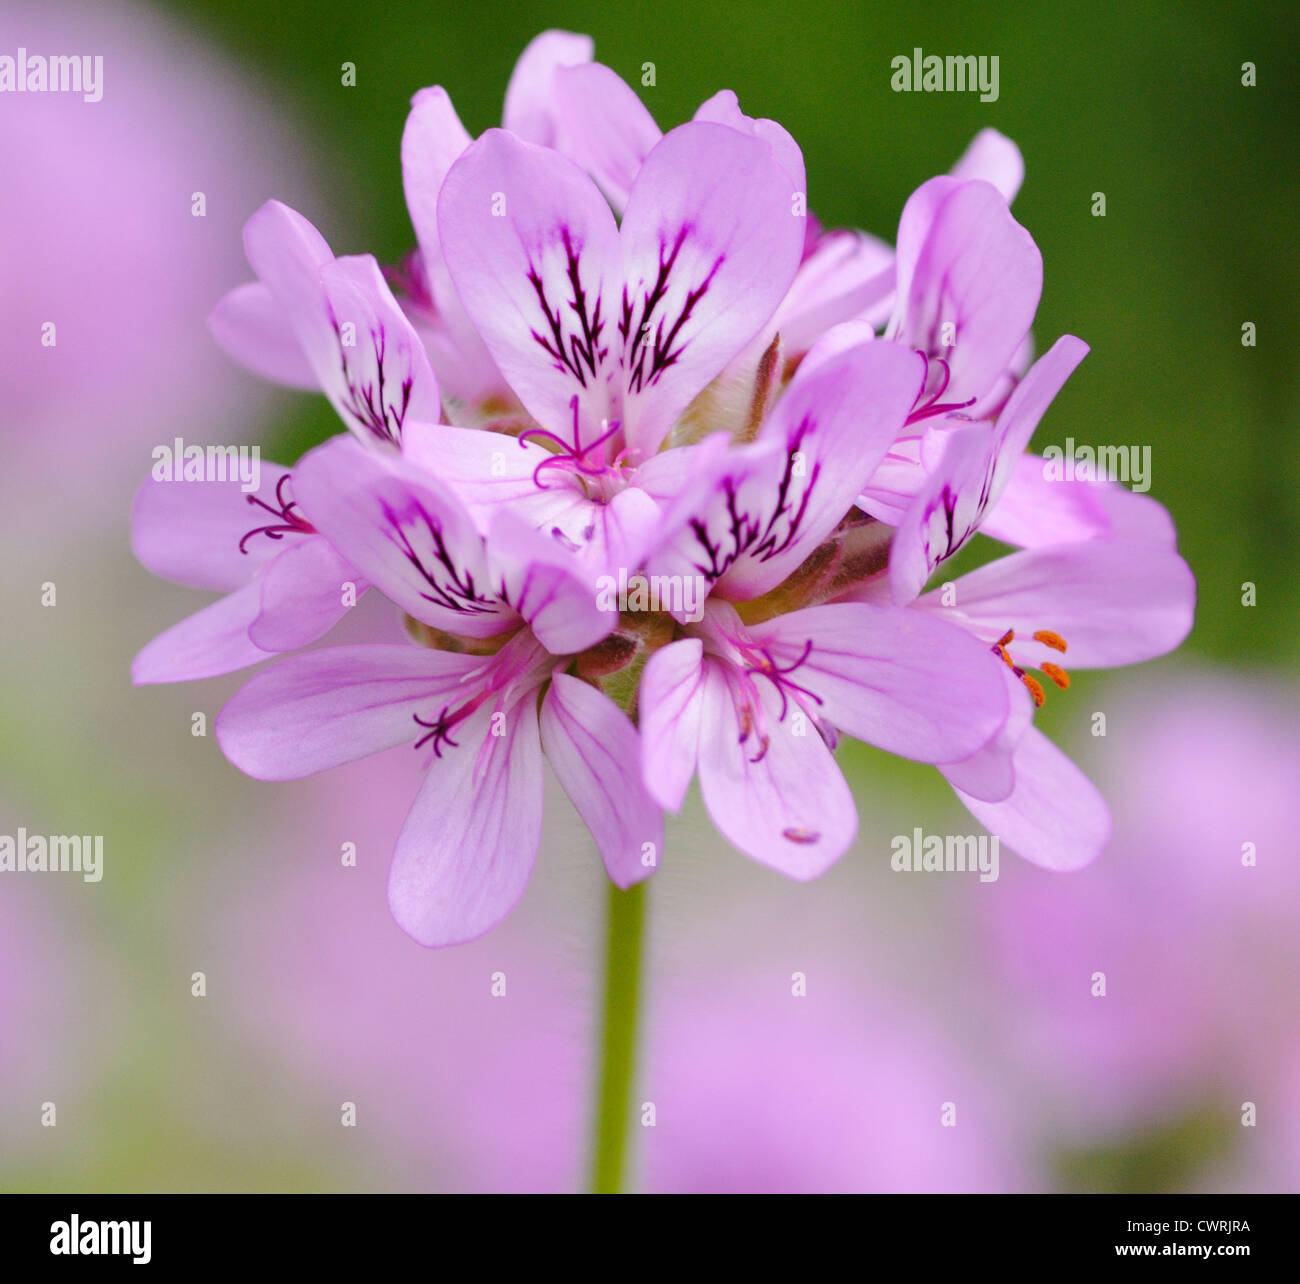 Pelargonium capitatum, Purple flower cluster isolated in shallow focus. Stock Photo